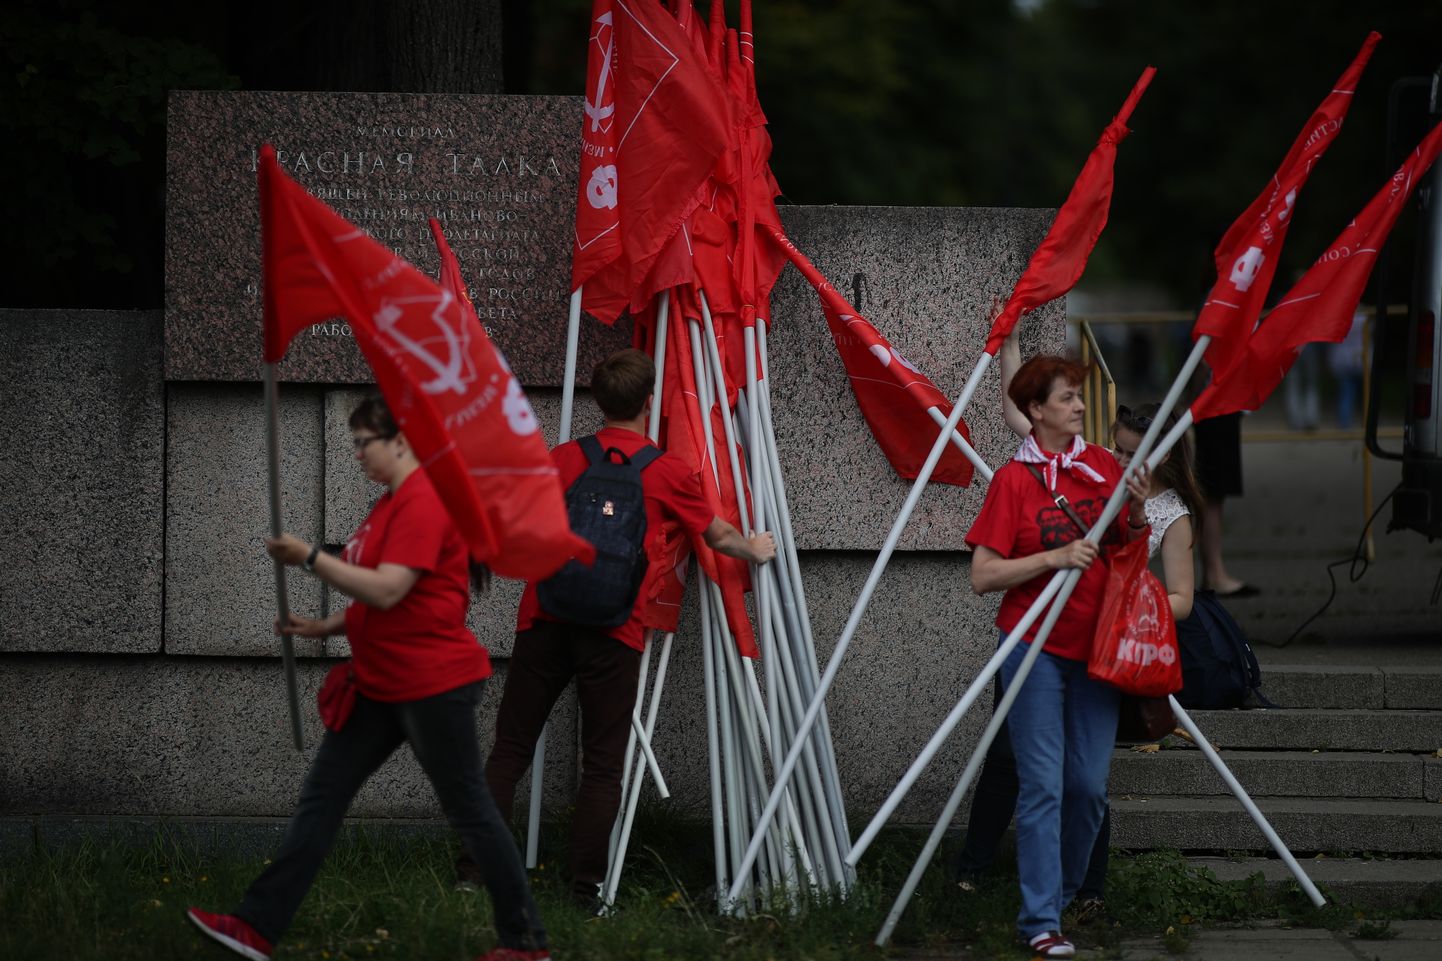 Kommunistliku partei lippudega venelased protesteerisid pensioniea tõstmise vastu Ivanovo linnas.